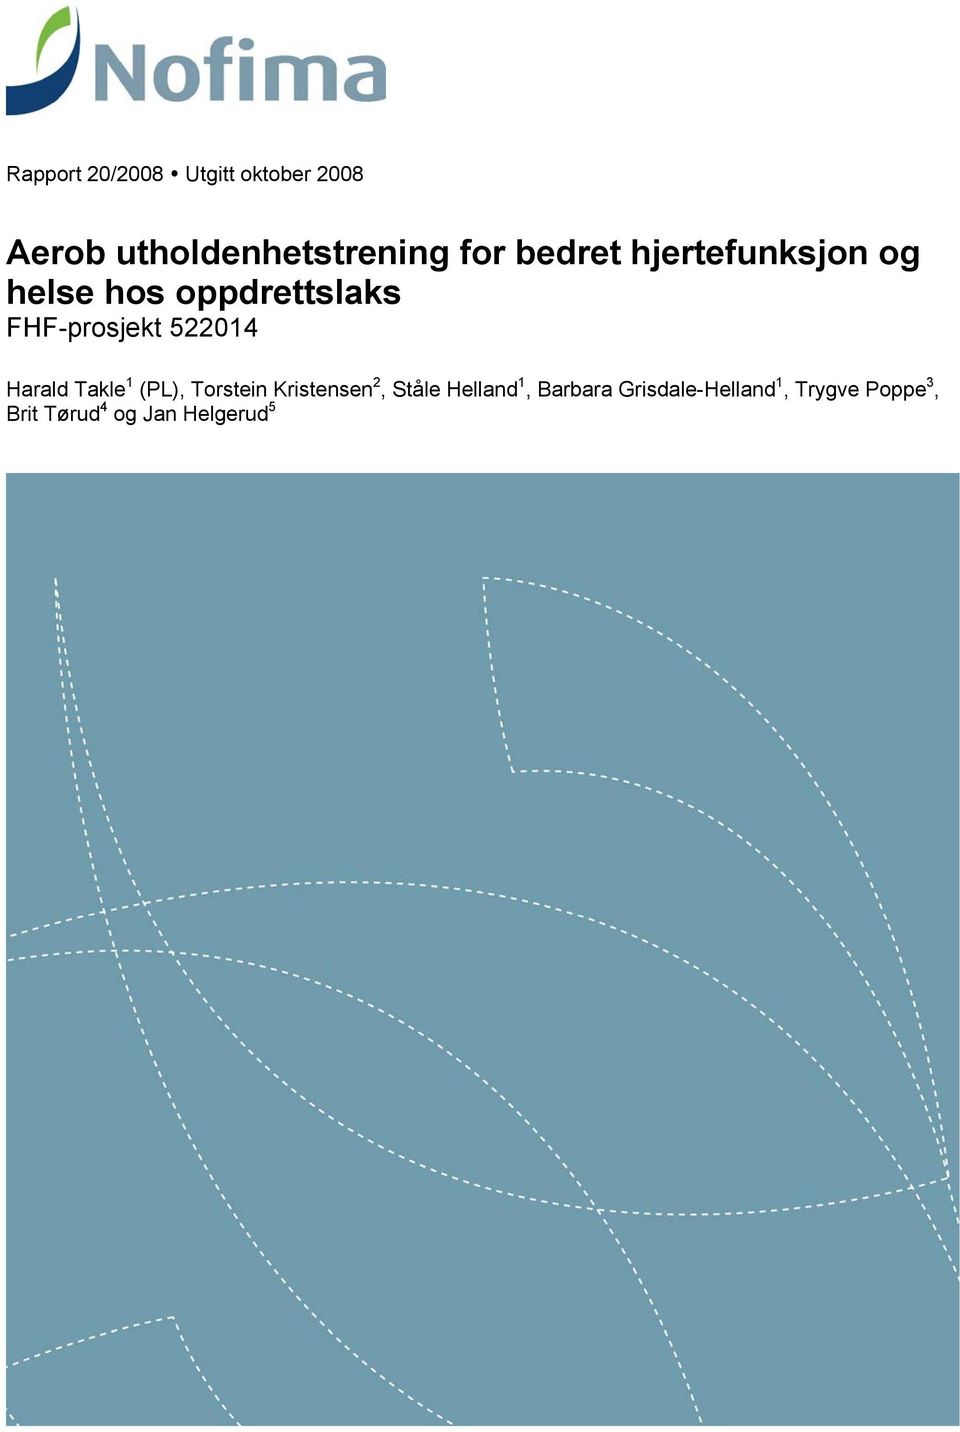 522014 Harald Takle 1 (PL), Torstein Kristensen 2, Ståle Helland 1,